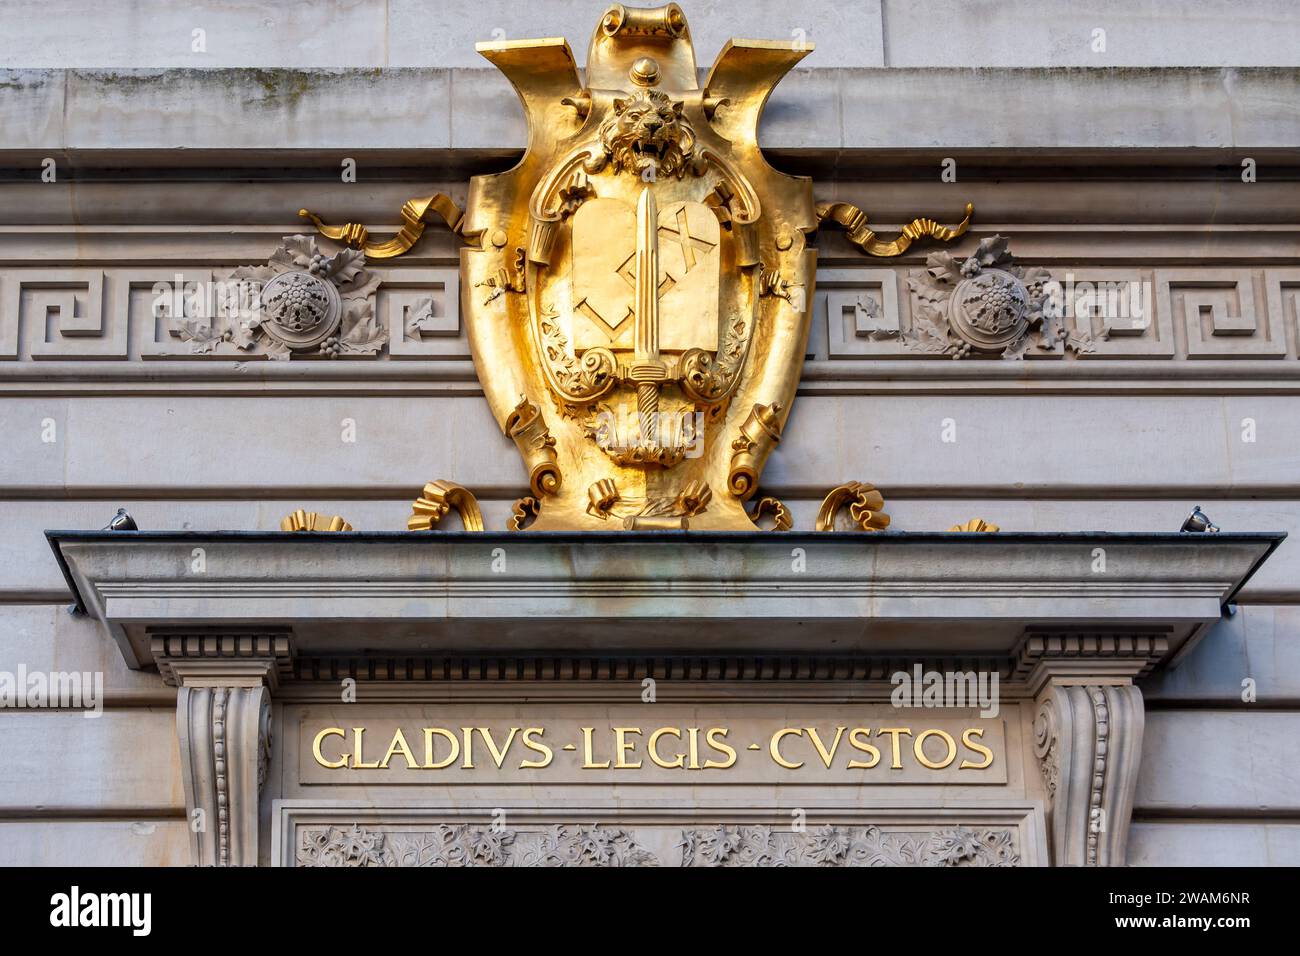 Armoiries dorées sur la façade du Palais de Justice de Paris avec la devise latine 'Gladius legis custoss' (c'est-à-dire : 'l'épée gardienne de la loi') Banque D'Images